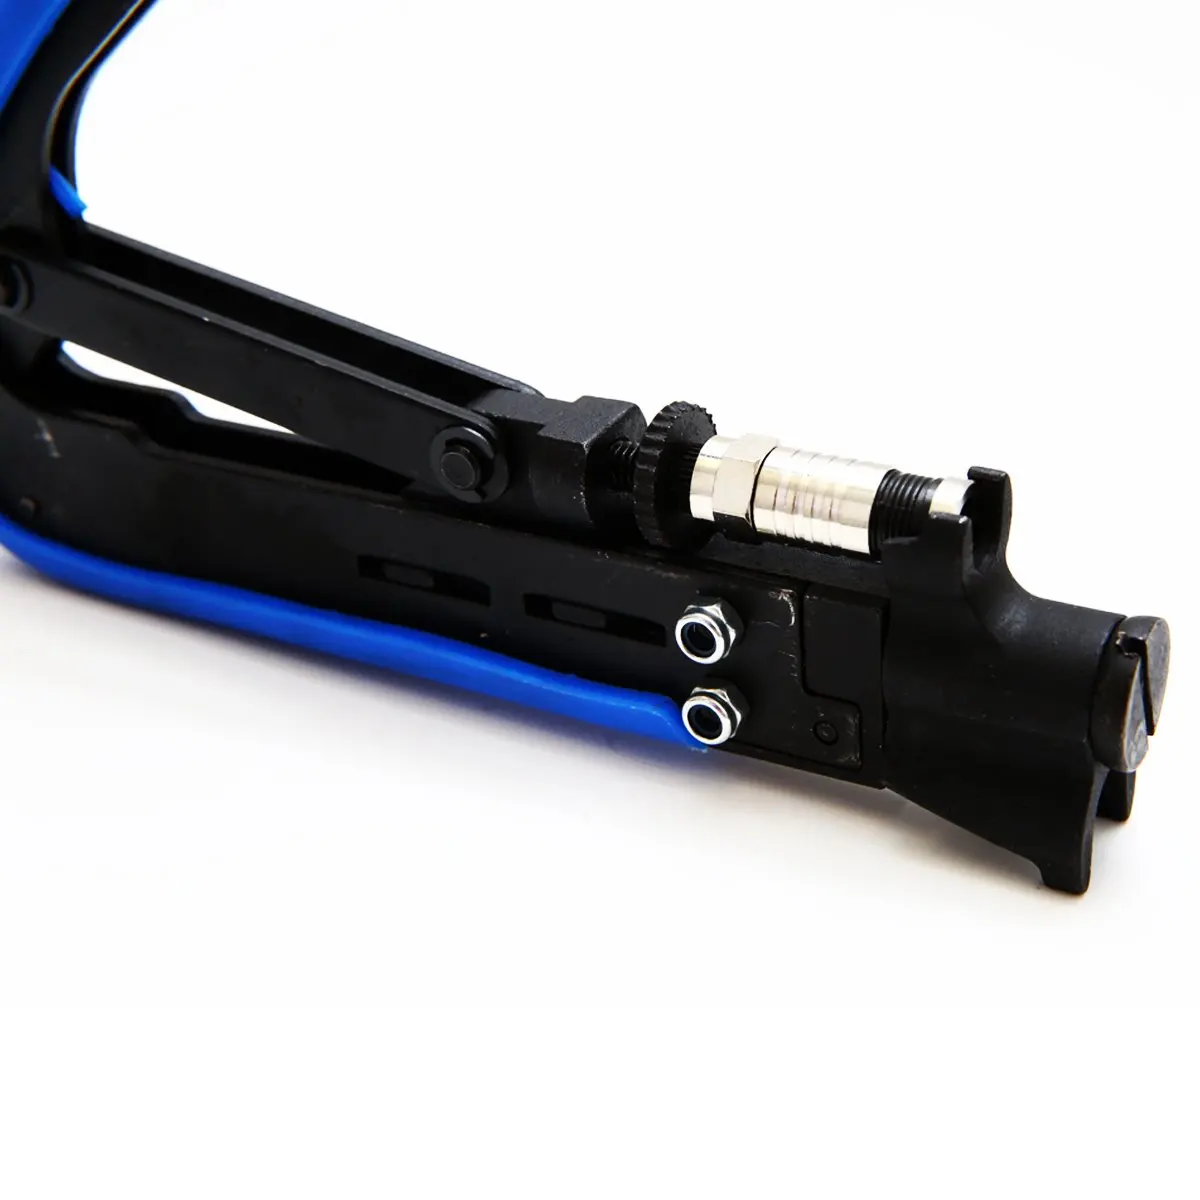 Коаксиальный кабель комплект для обжима, инструмент сжатия коаксиальный кабель комплект для обжима, регулируемый Rg6 Rg59 Rg11 75-5 75-7 коаксиальный кабель для зачистки